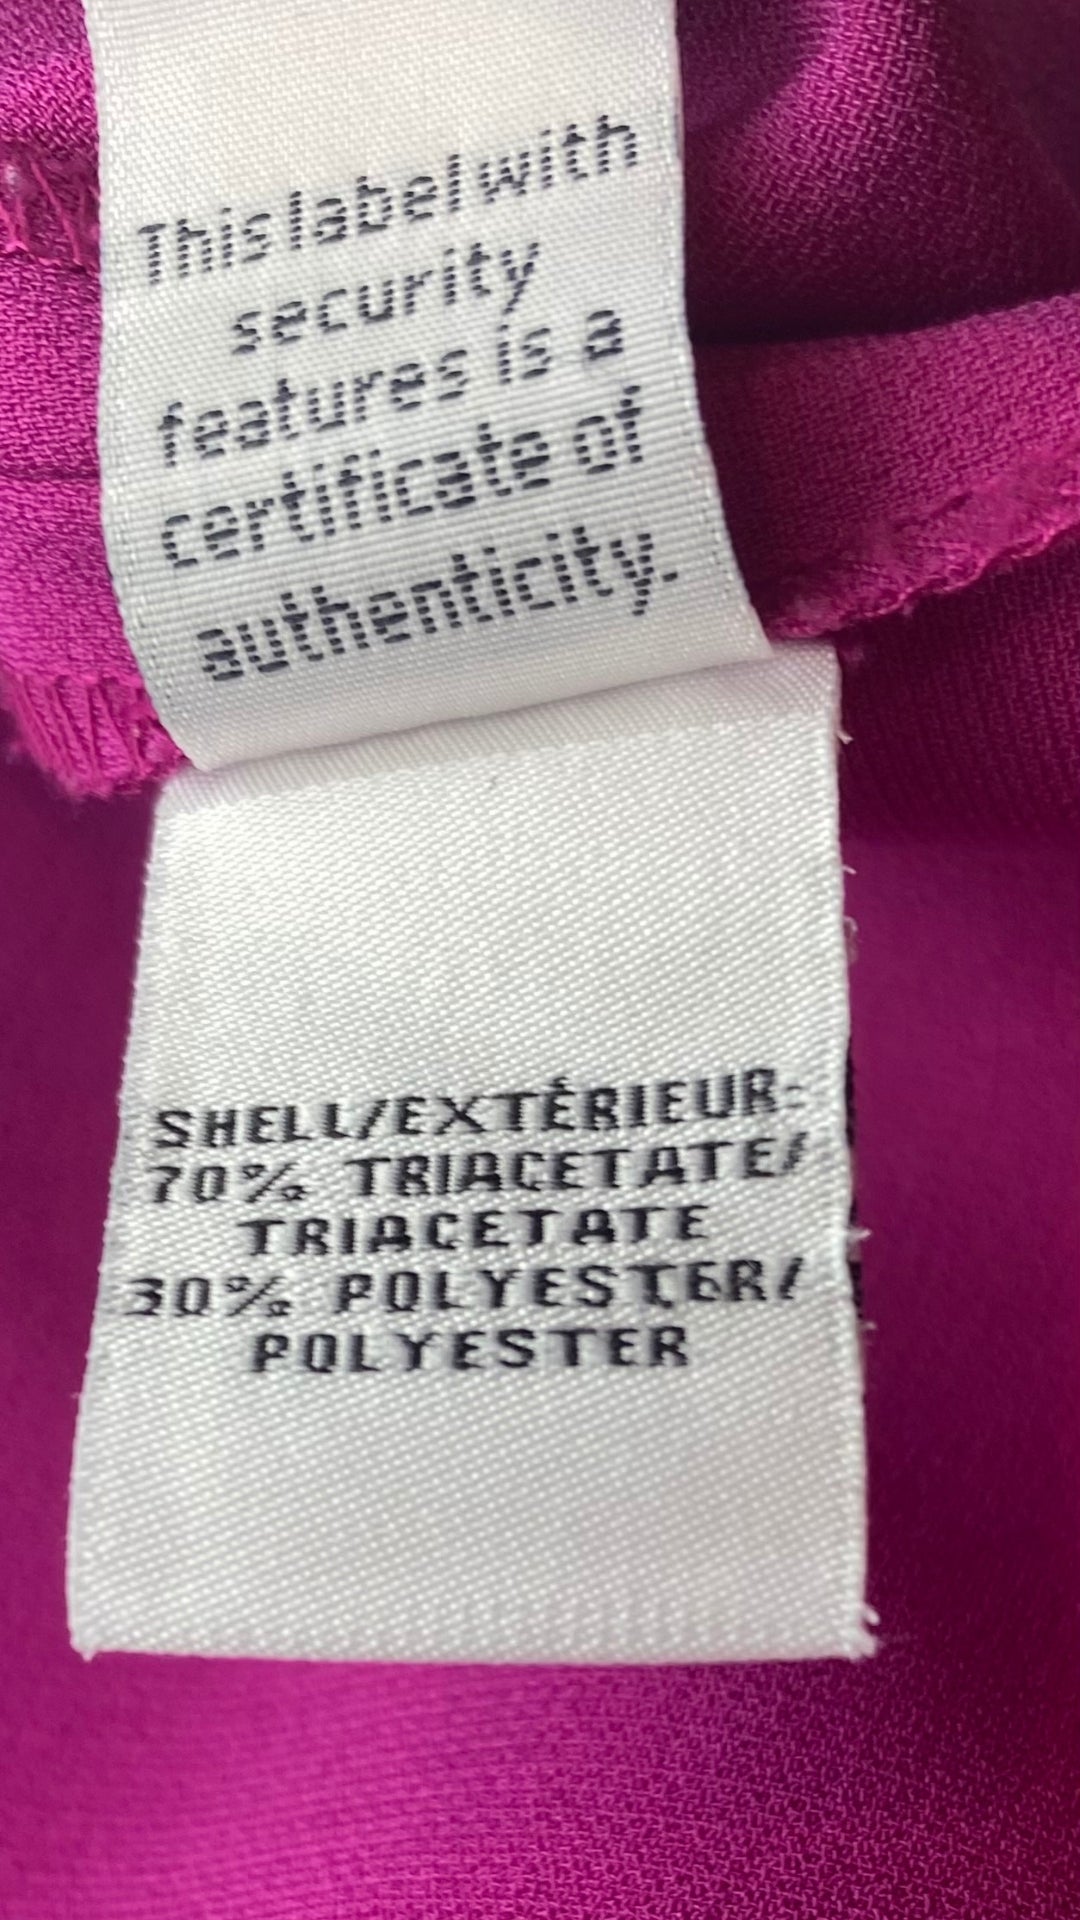 Robe ample avec poches et boutons argentés aux épaules, Diane von Furstenberg, taille 10. Vue de l'étiquette de composition.